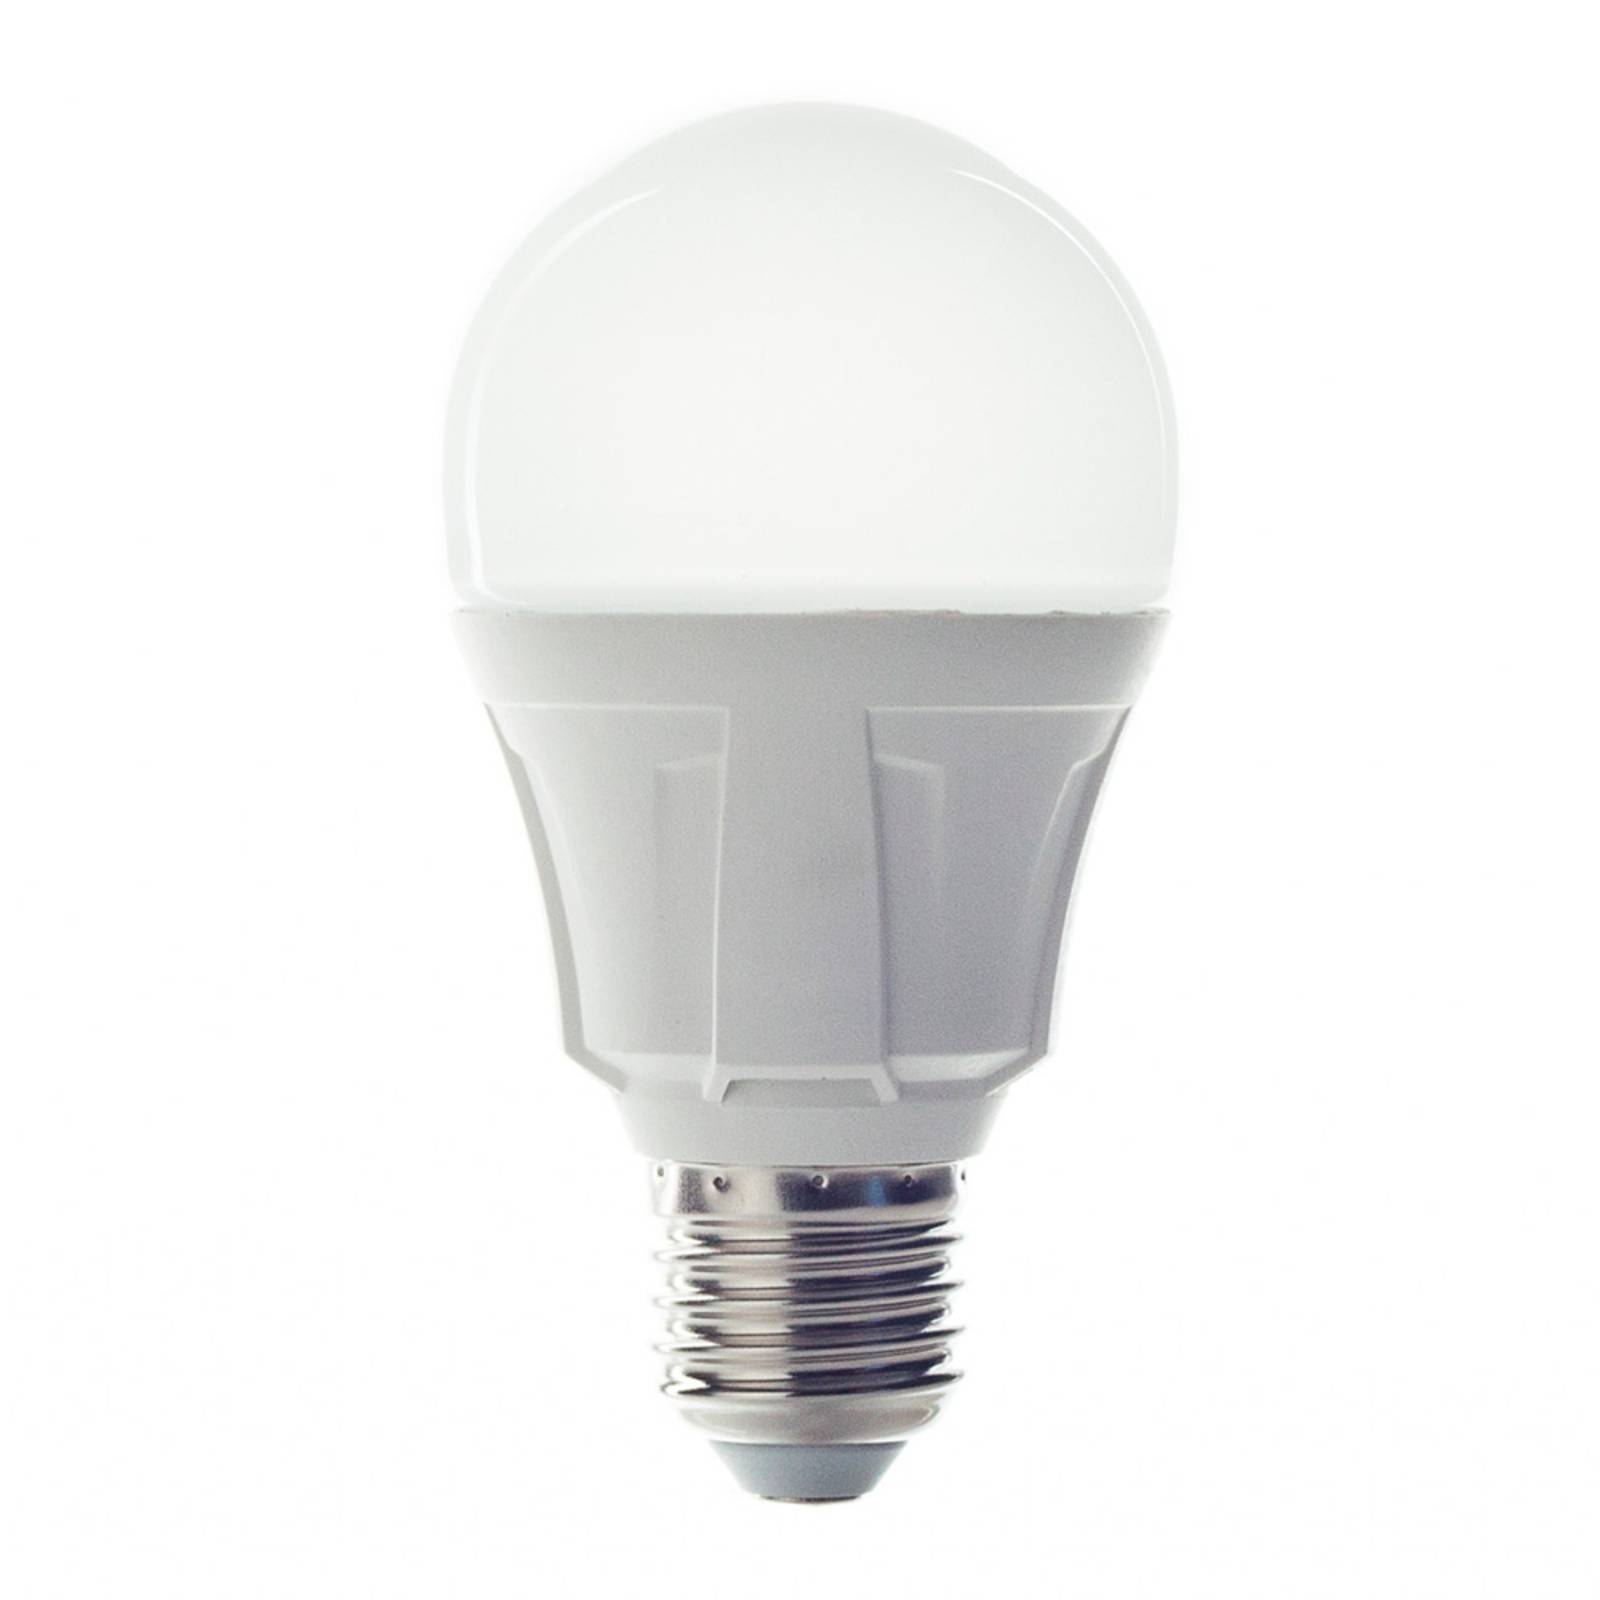 Zdjęcia - Żarówka Lindby E27 11W 830  LED w formie żarówki, ciepła biel 